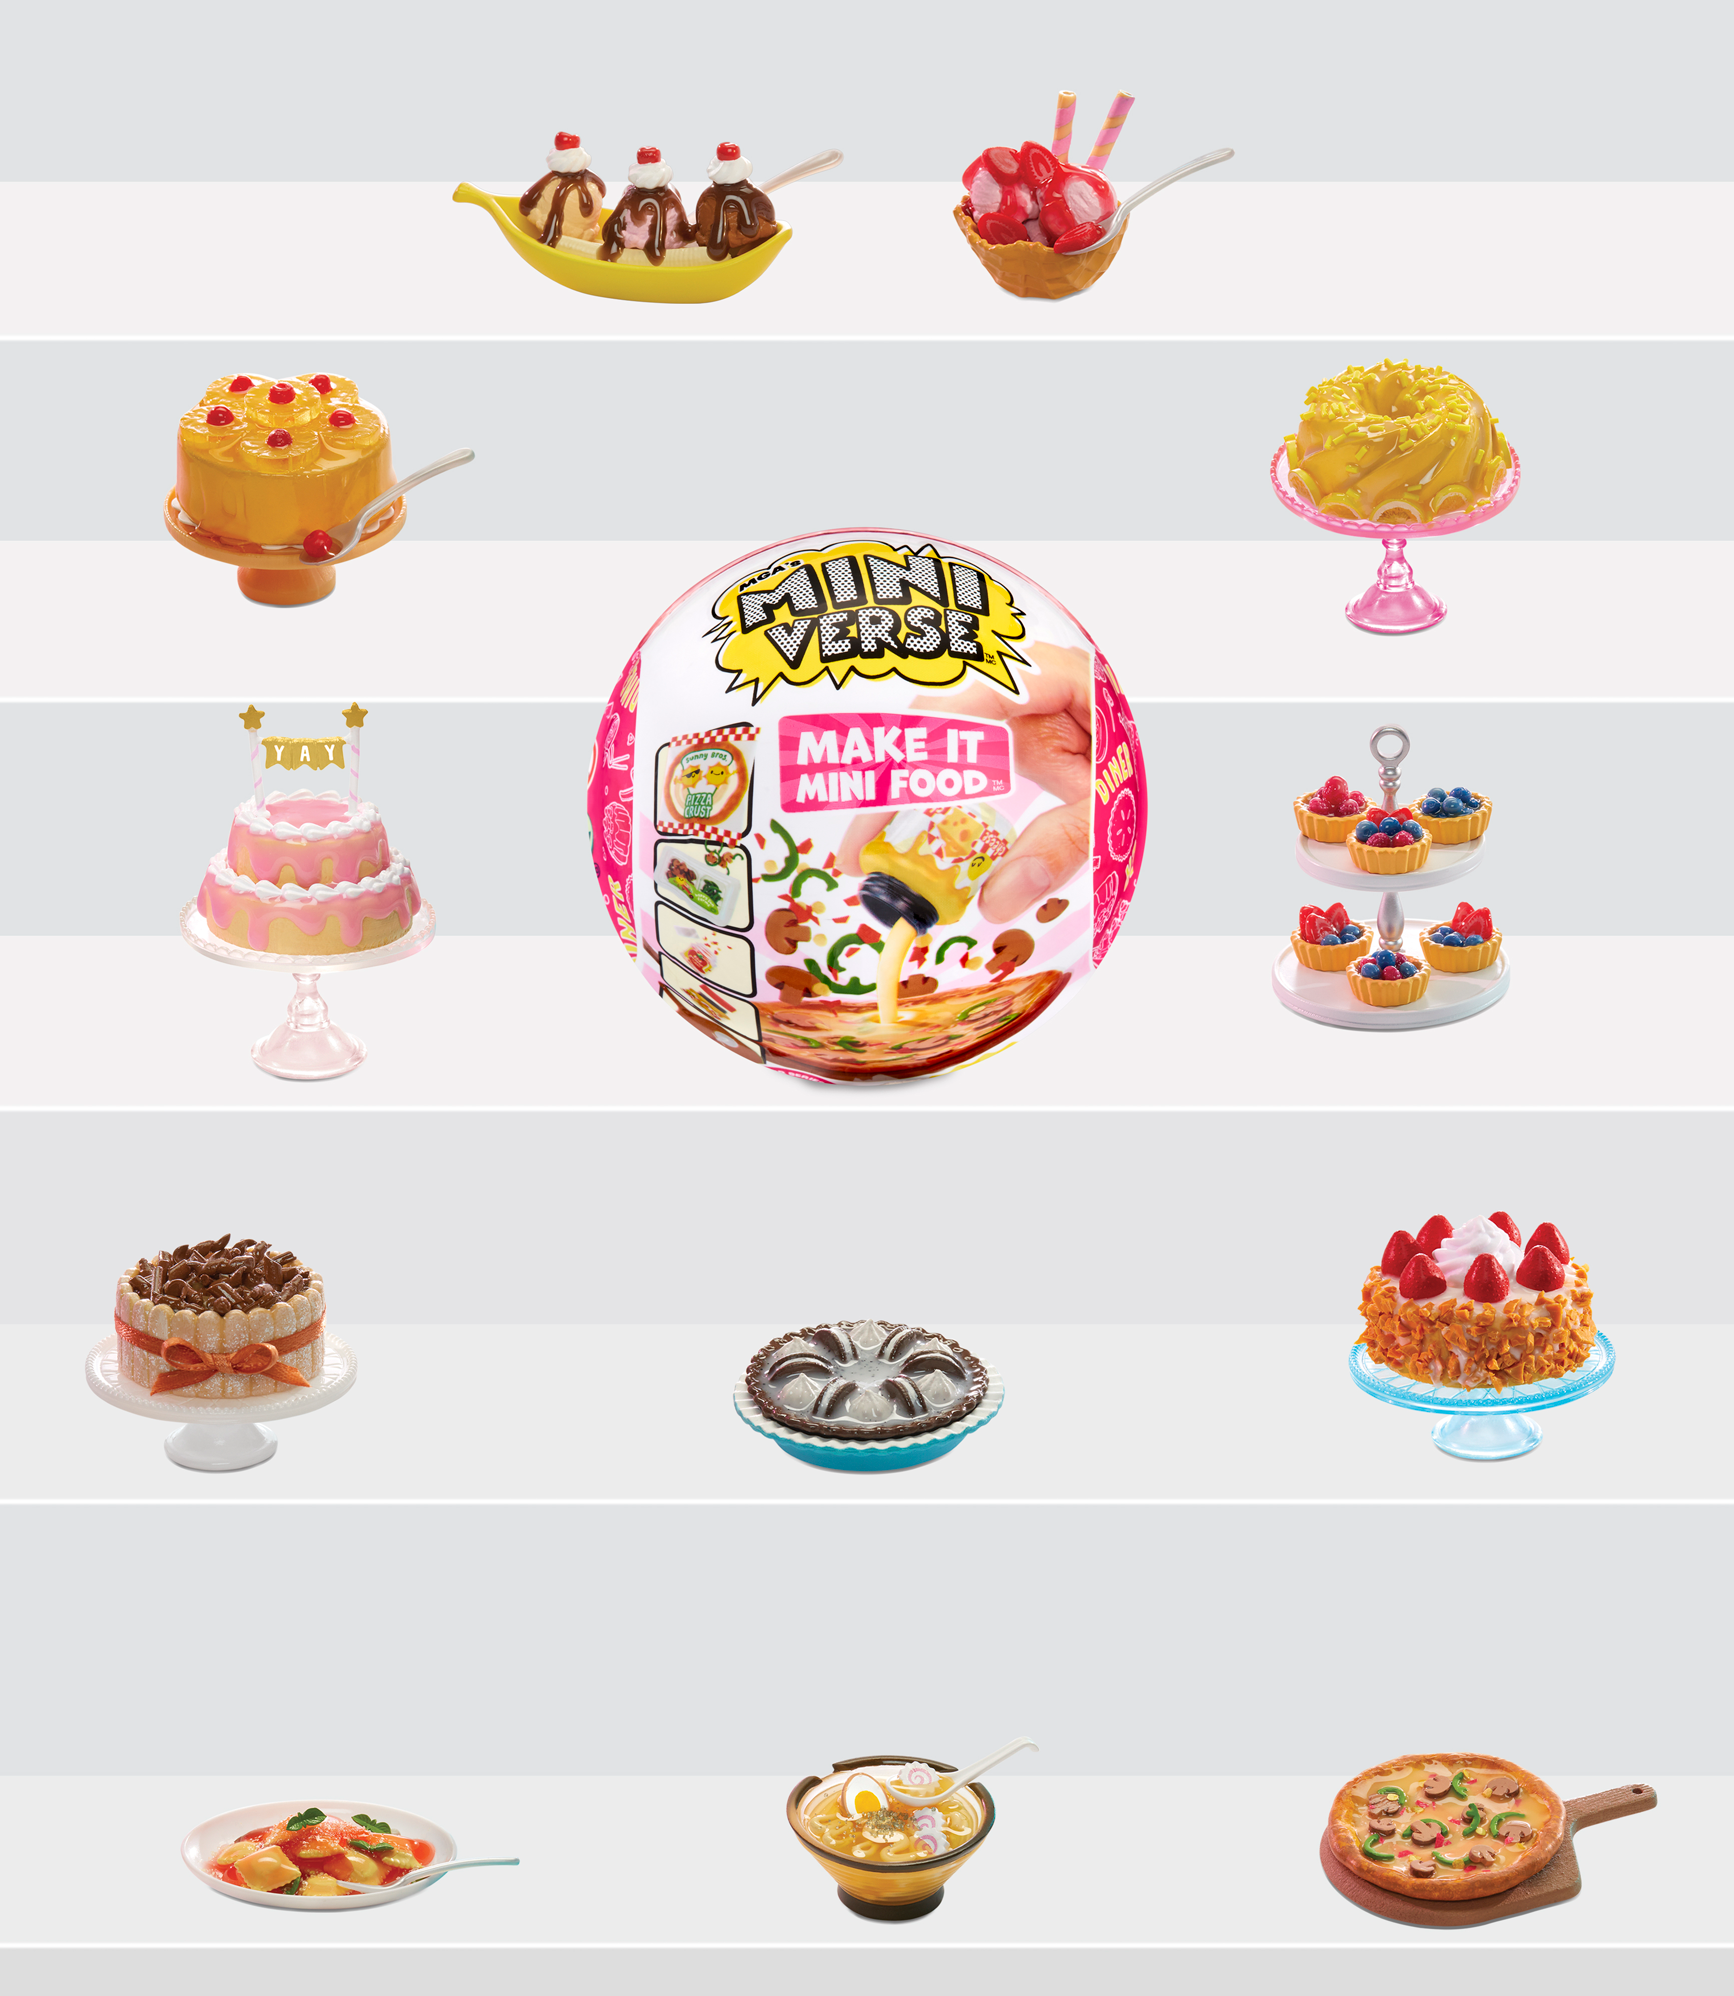 Mga's miniverse-mini food diner serie 2 – gioco di resina in una palla a sorpresa - scopri gli ingredienti e gli accessori da cucina a sorpresa, 12 mini cibi da creare e collezionare – assortimento casuale - 